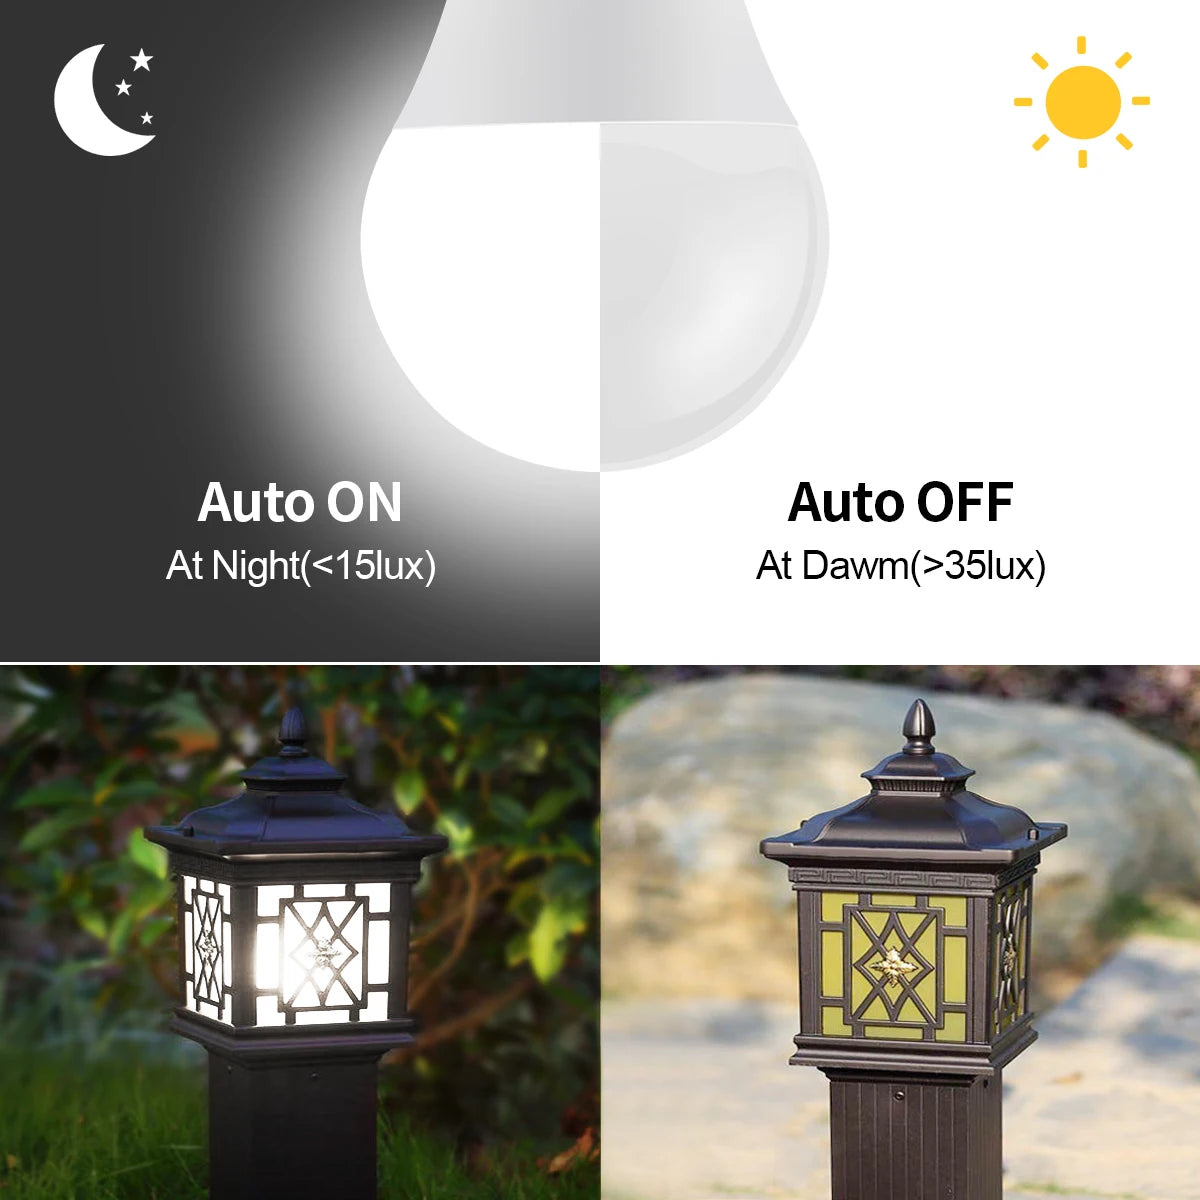 AC110V/220V Day Night Light Auto ON OFF 15W LED E27 Light Control Sensor Light Bulb Smart Lamp For Outdoor Garden Patio Porch